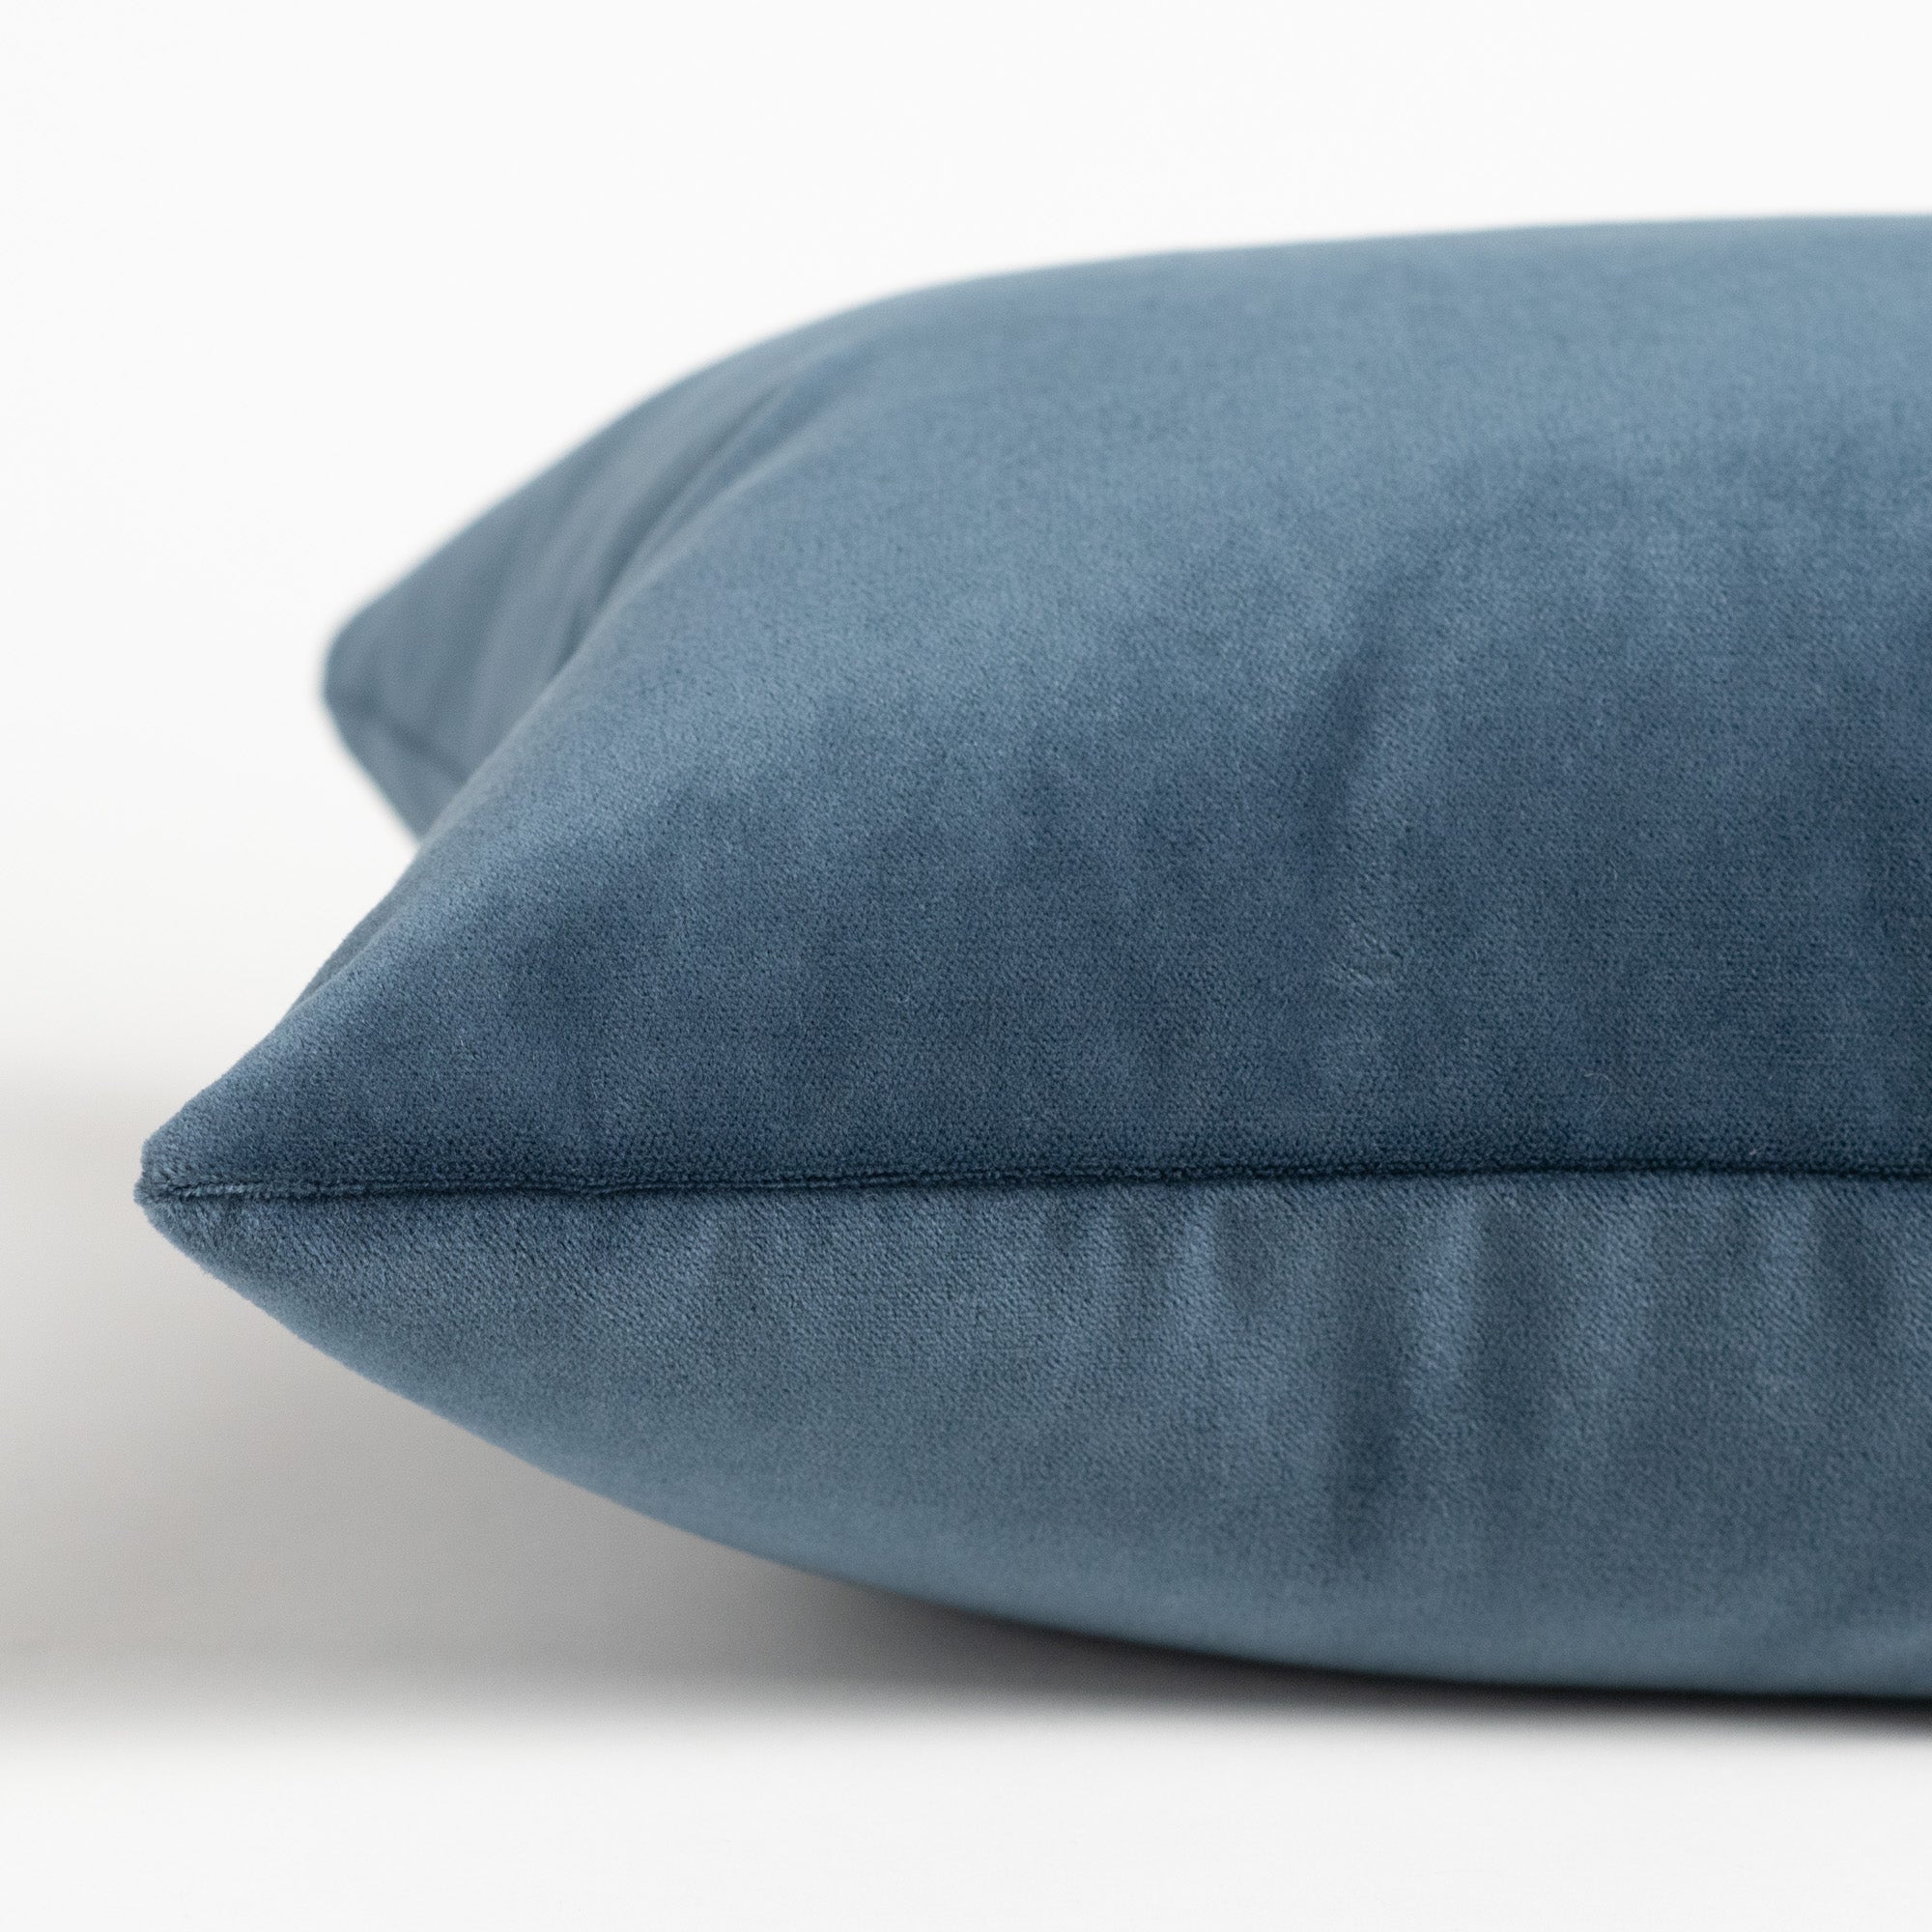 Tonic Living Pillows - Throw Pillows, Decorative Pillows, Lumbar